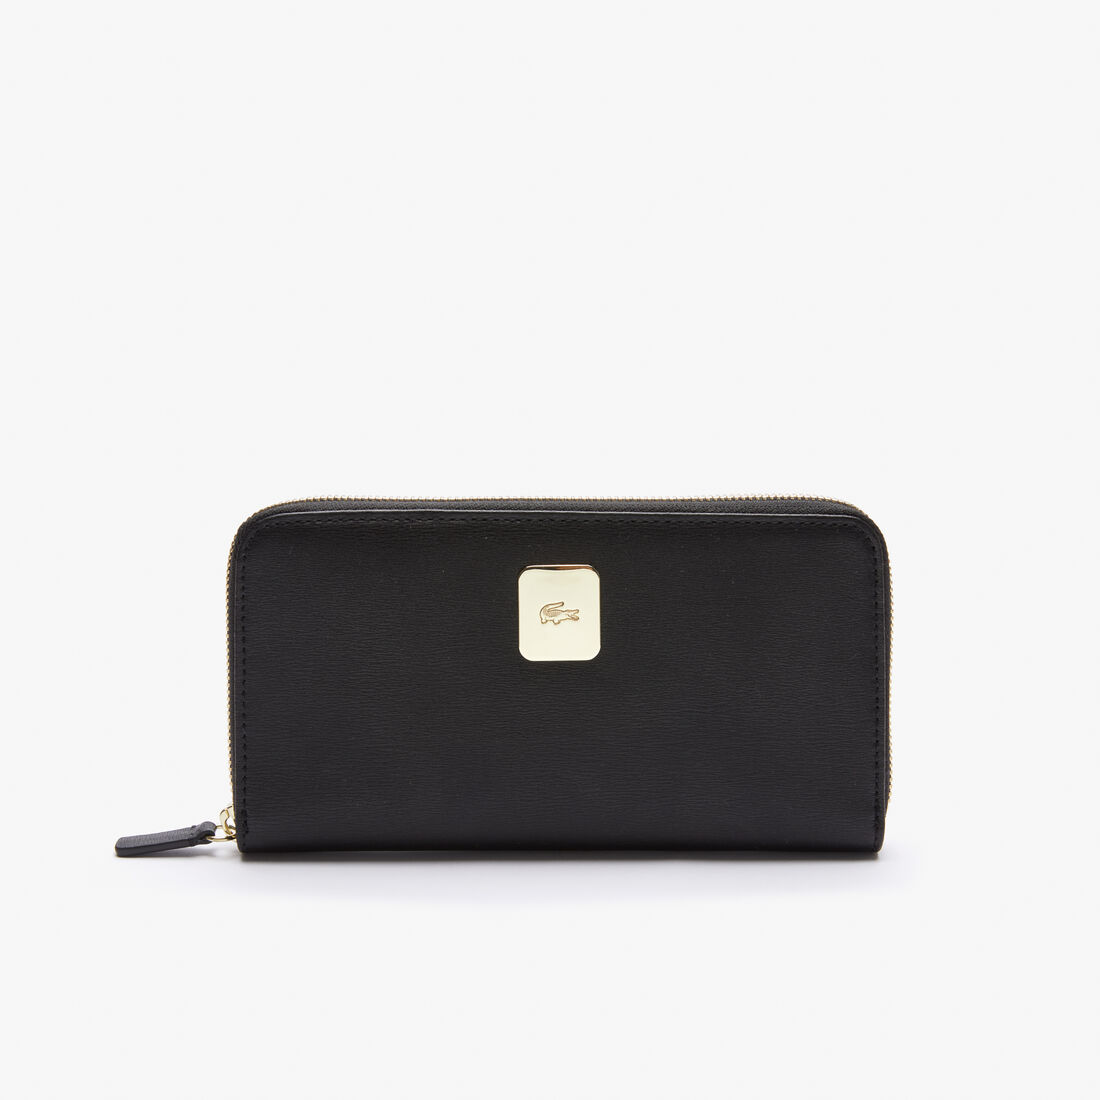 Lacoste Amelia Large Piqué Leather Women's Wallets Black | 546-KPQWMA